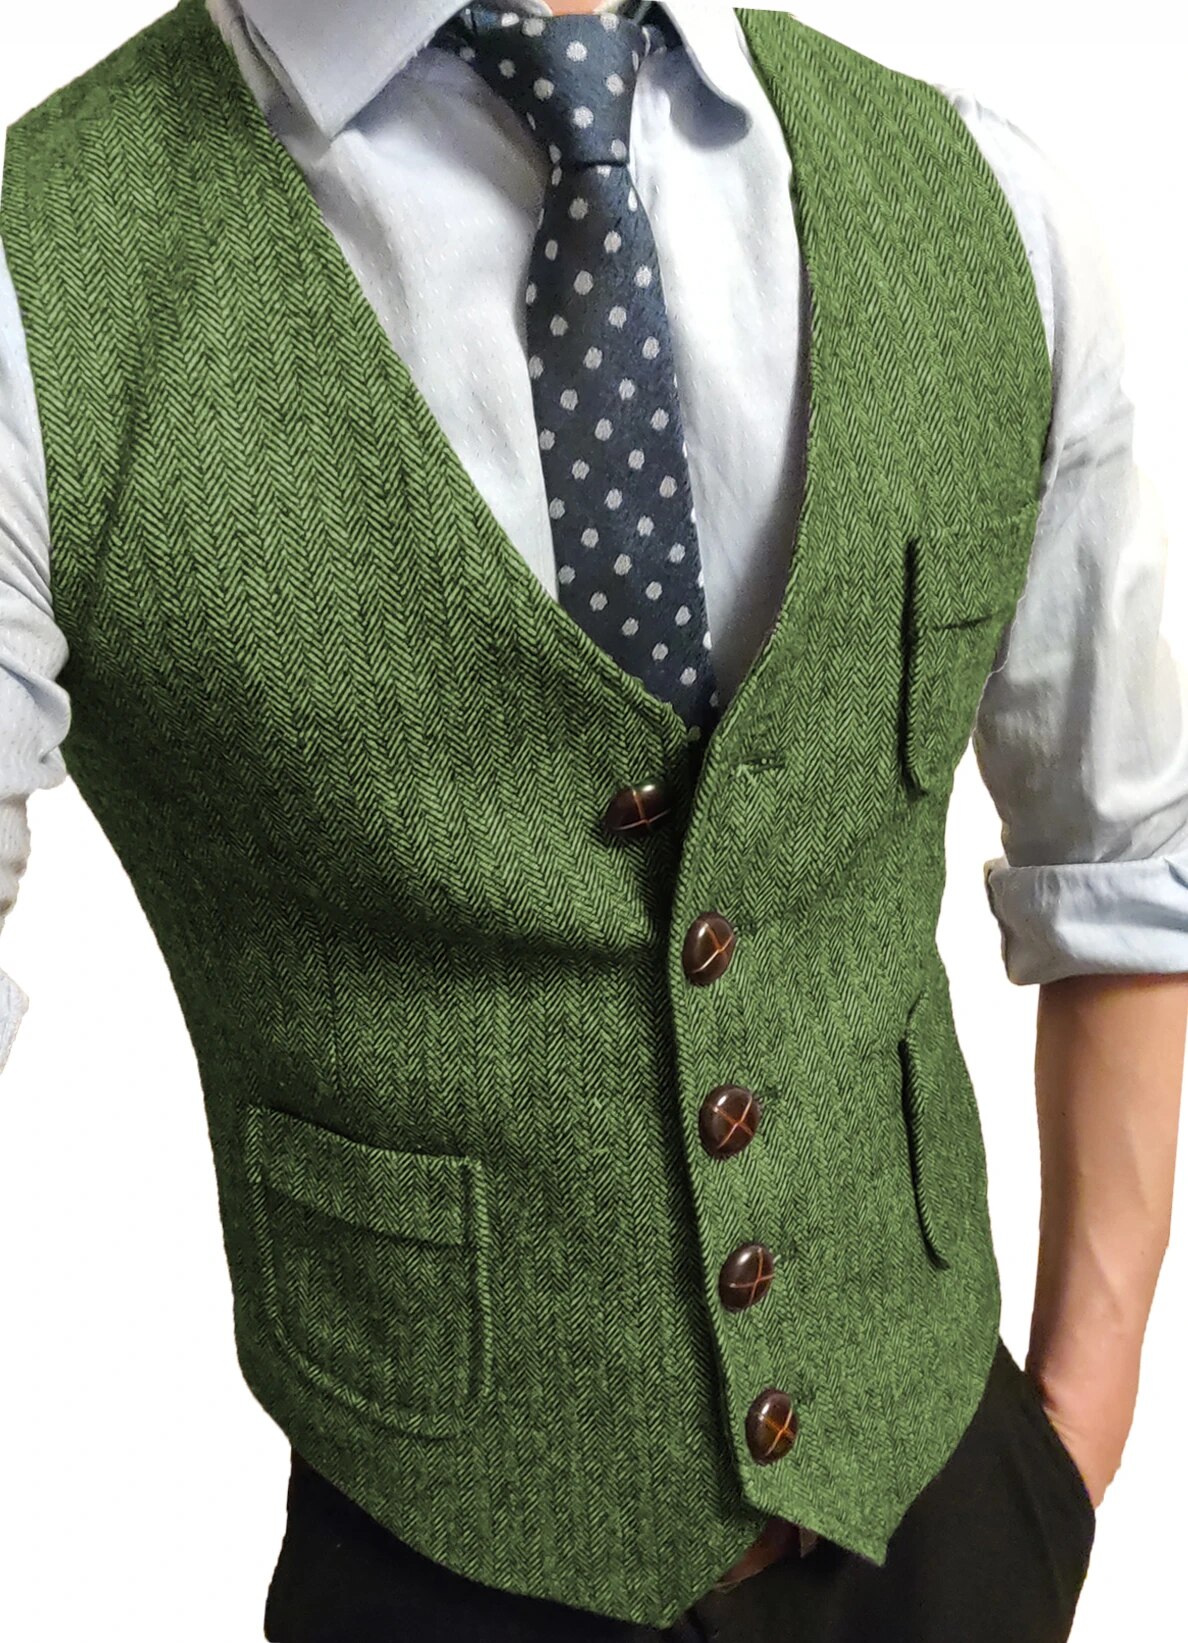 come4buy.com-Vintage Cotton Vests For Men